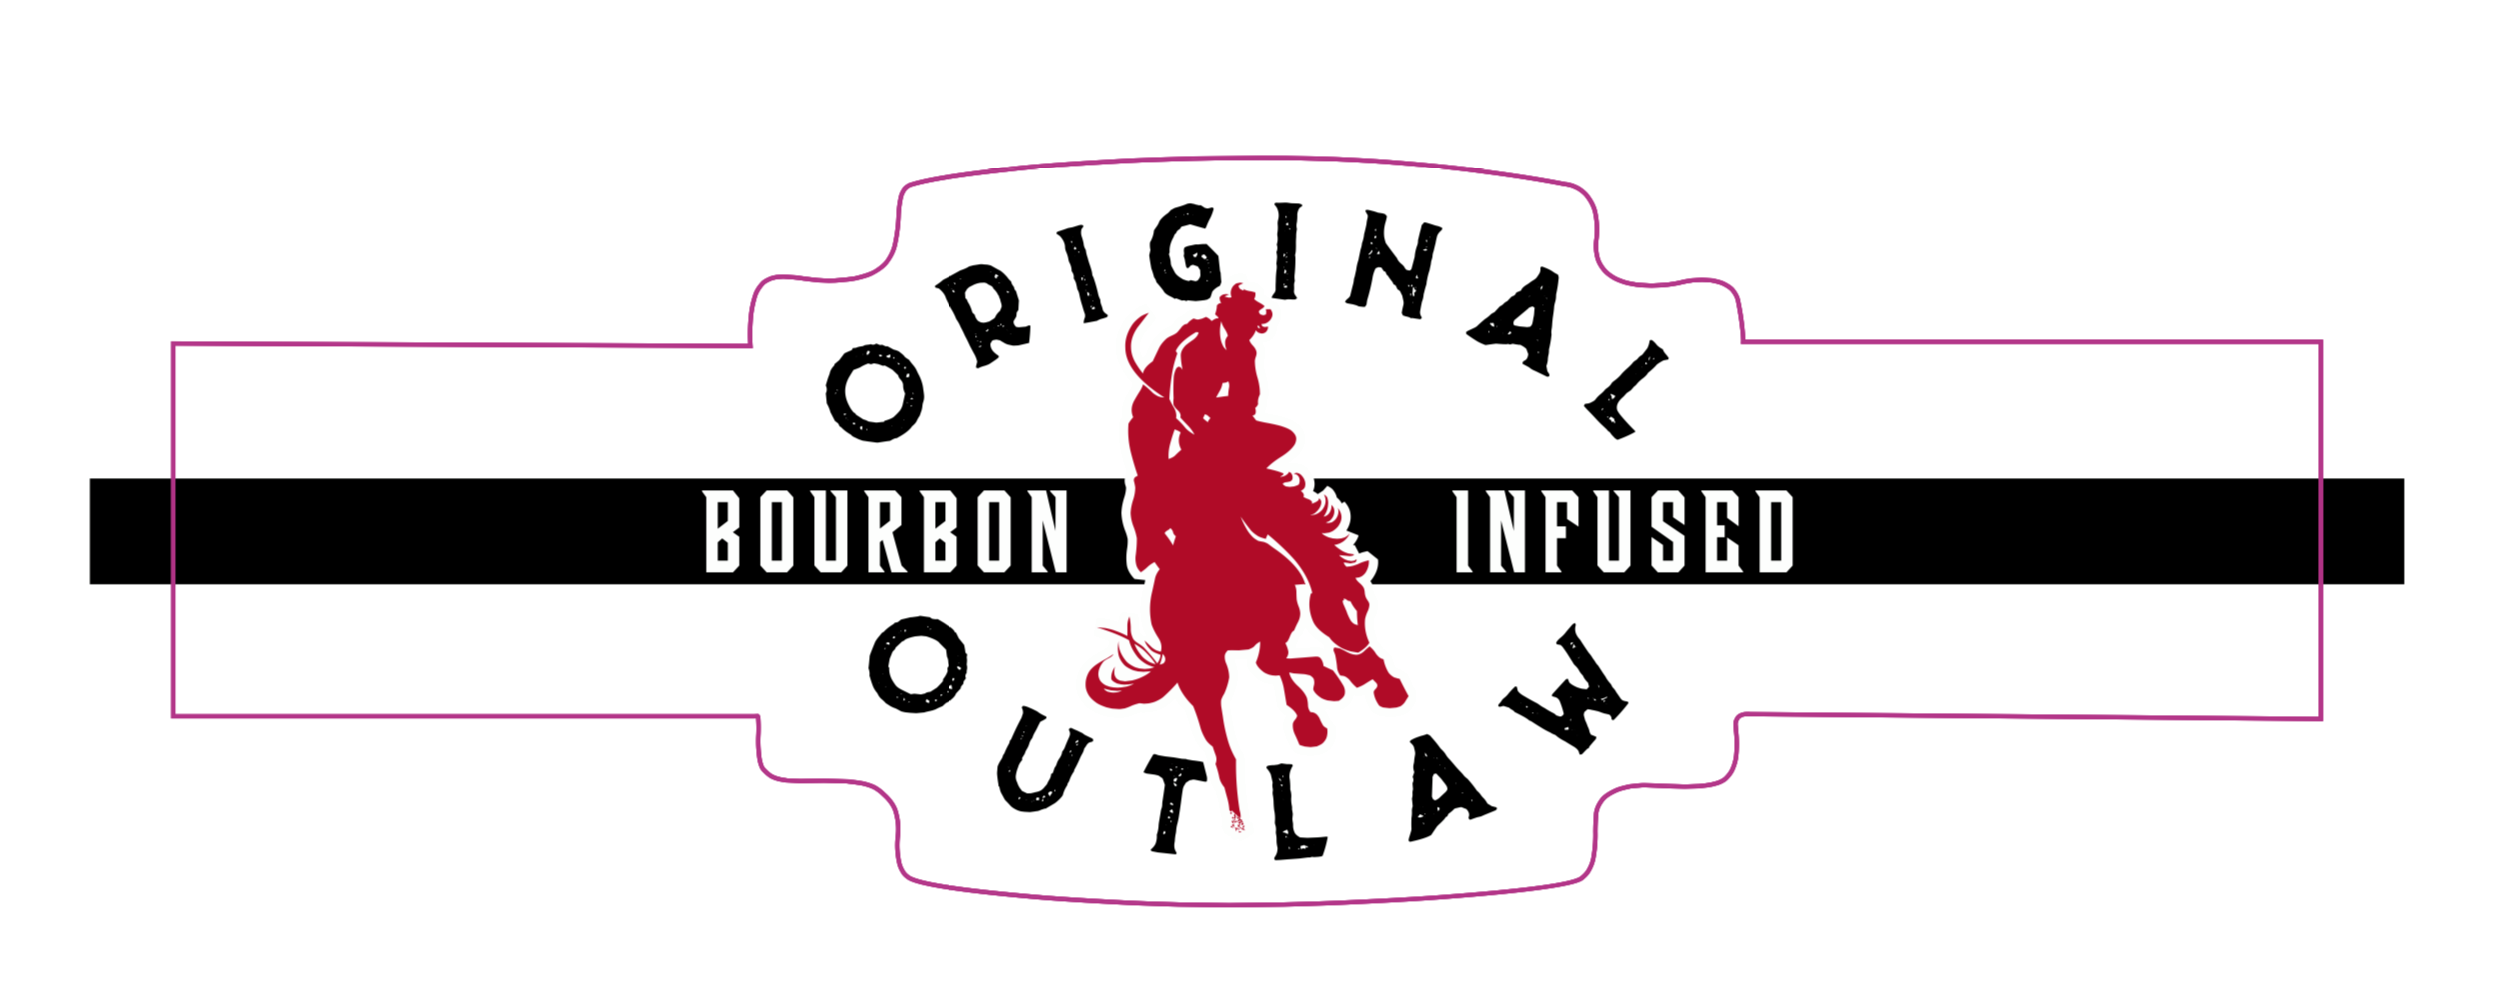 Original Outlaw 